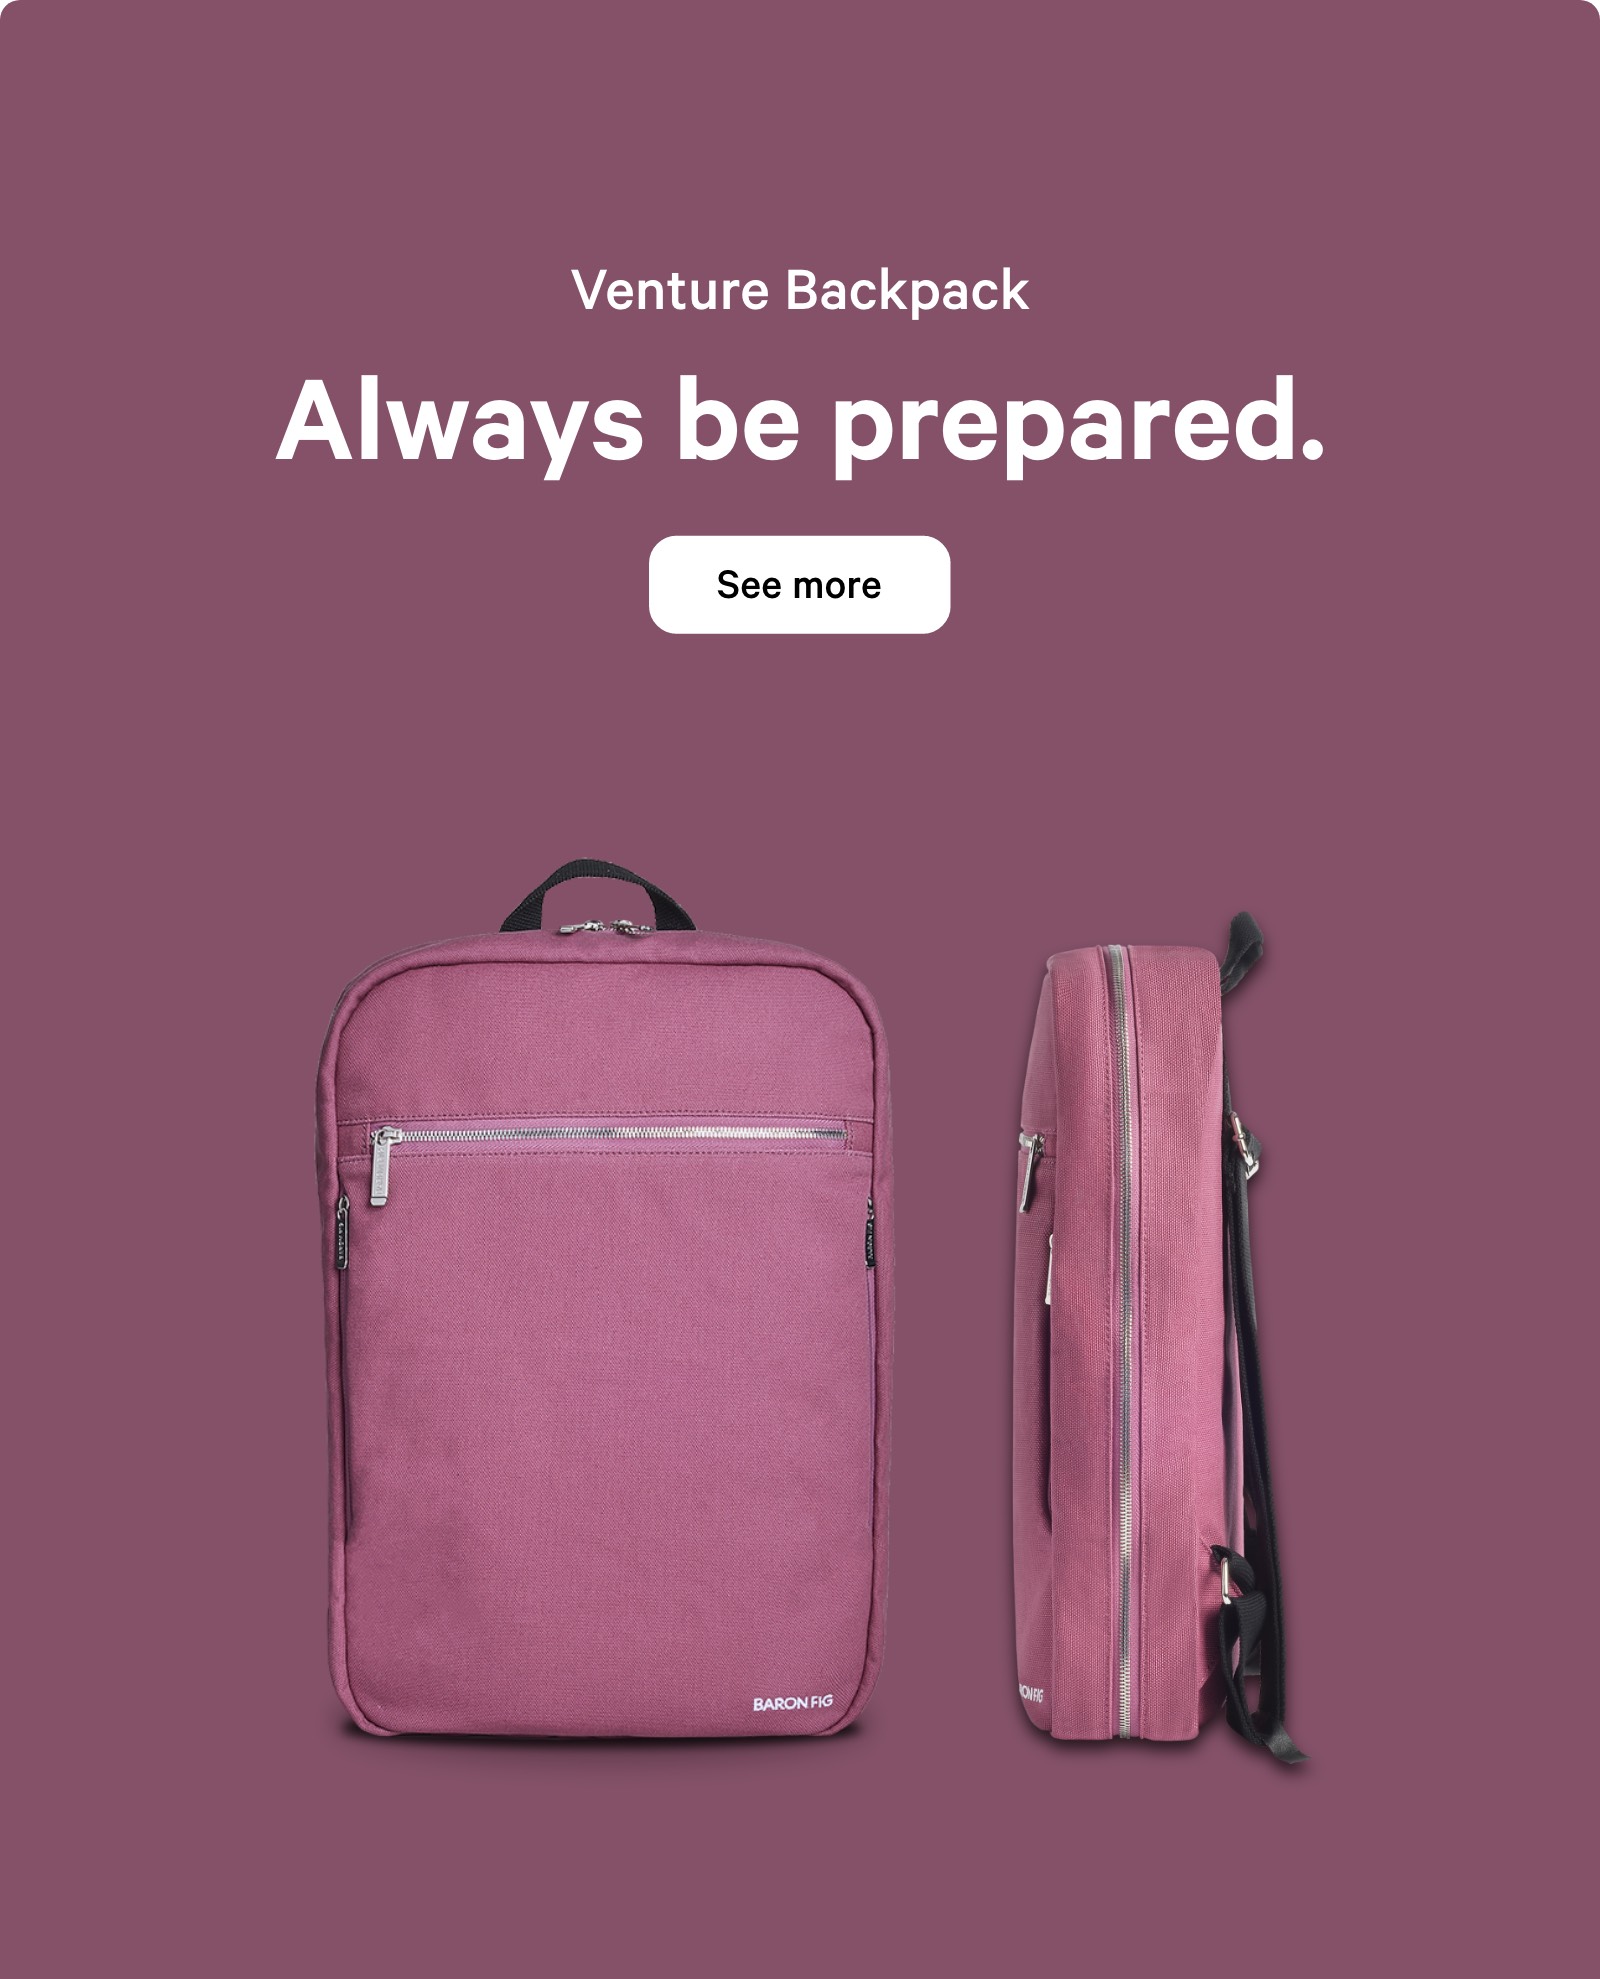 Venture Backpack. Always be prepared. See more ?